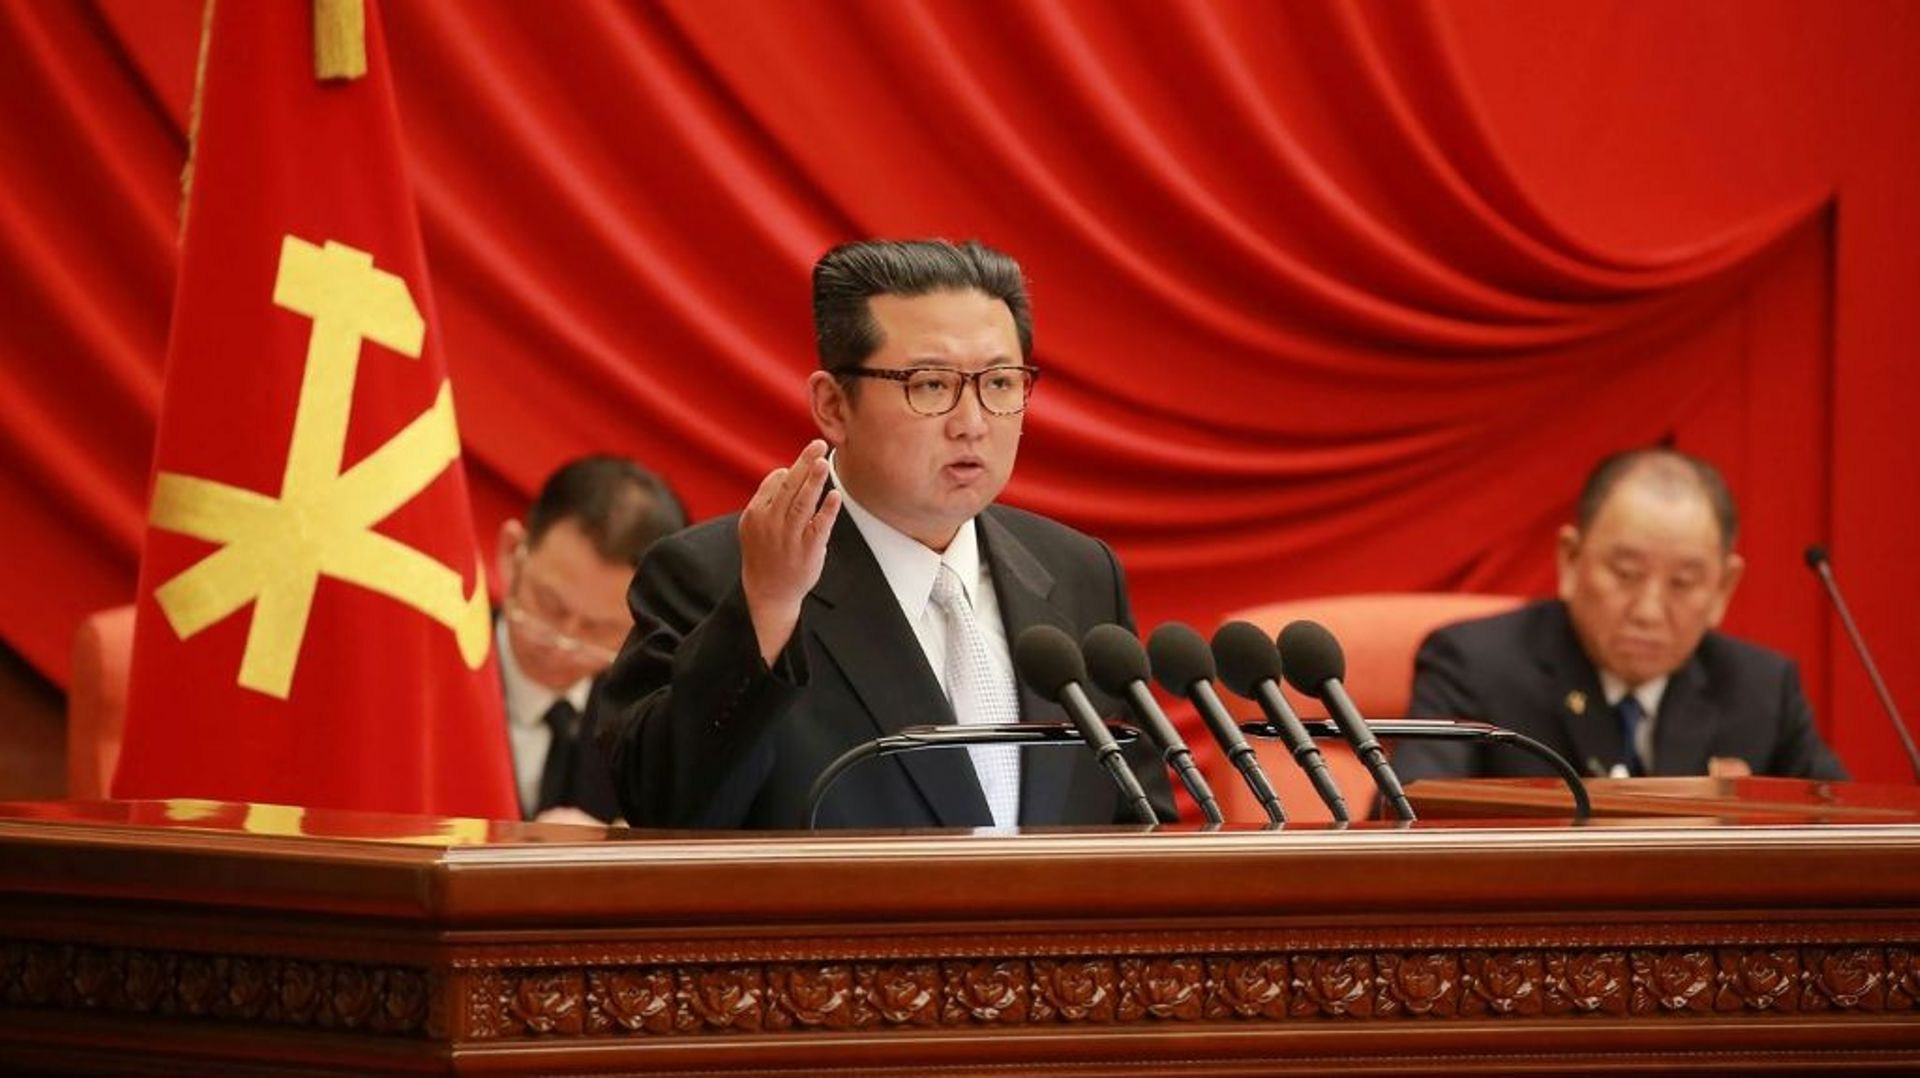 Une photo diffusée par l’agence d’Etat nord-coréenne KCNA montre le leader Kim Jong Un prononçant un discours lors d’une réunion du Parti des travailleurs à Pyongyang